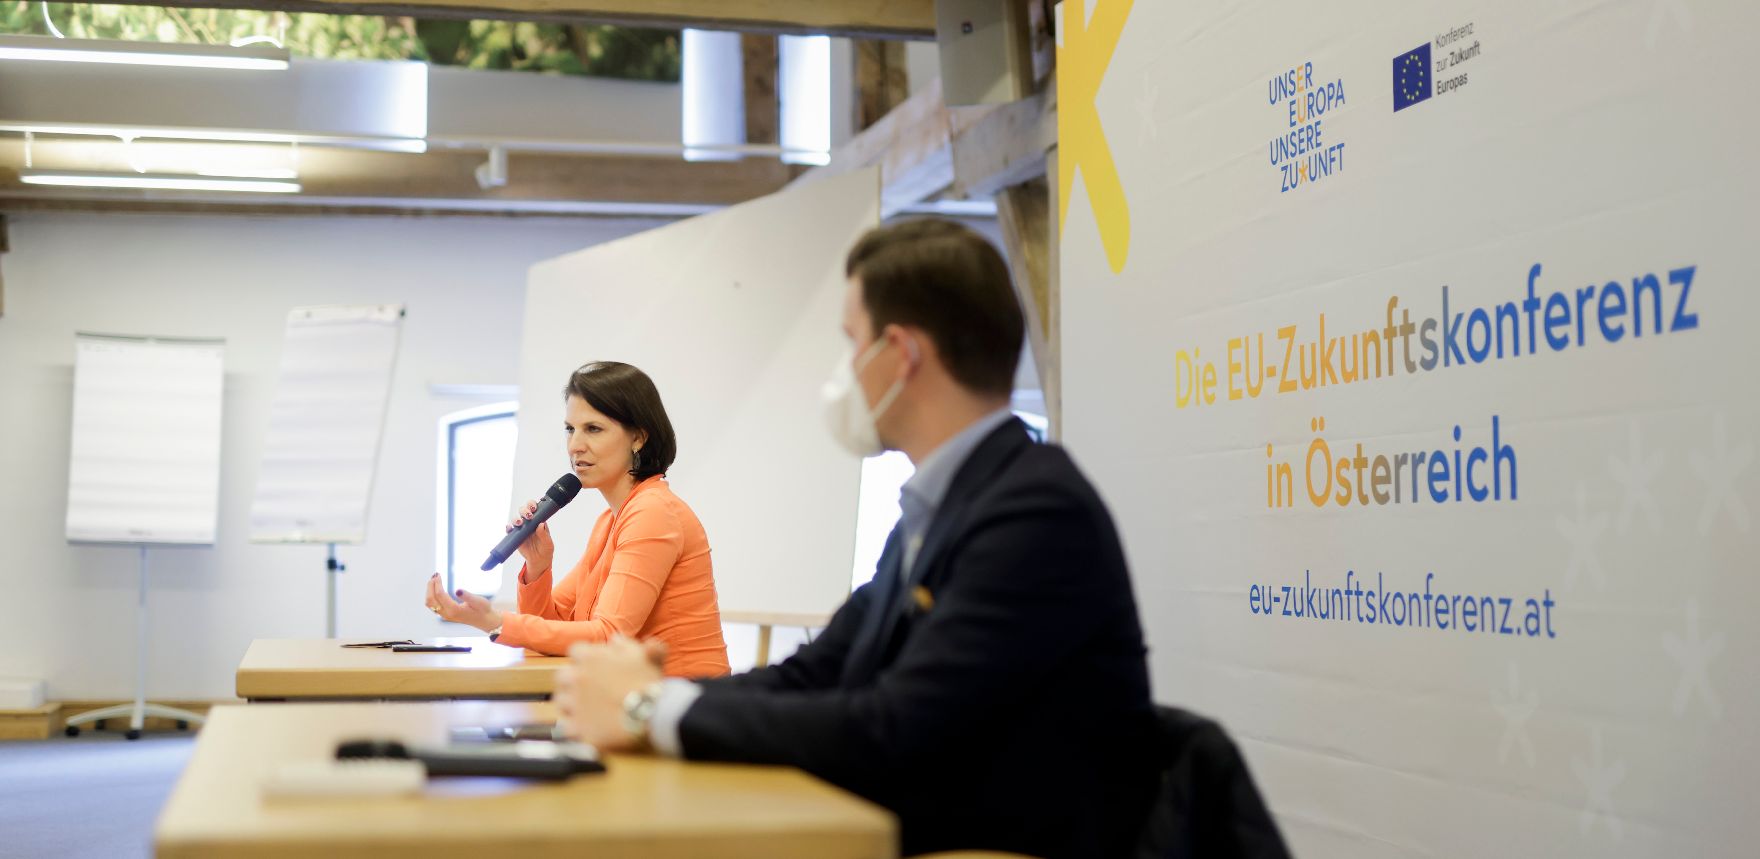 Am 28. Mai 2021 nahm Bundesministerin Karoline Edtstadler (l.) im Rahmen ihres Bundesländertags in Salzburg an der EU-Zukunftskonferenz in Österreich teil.